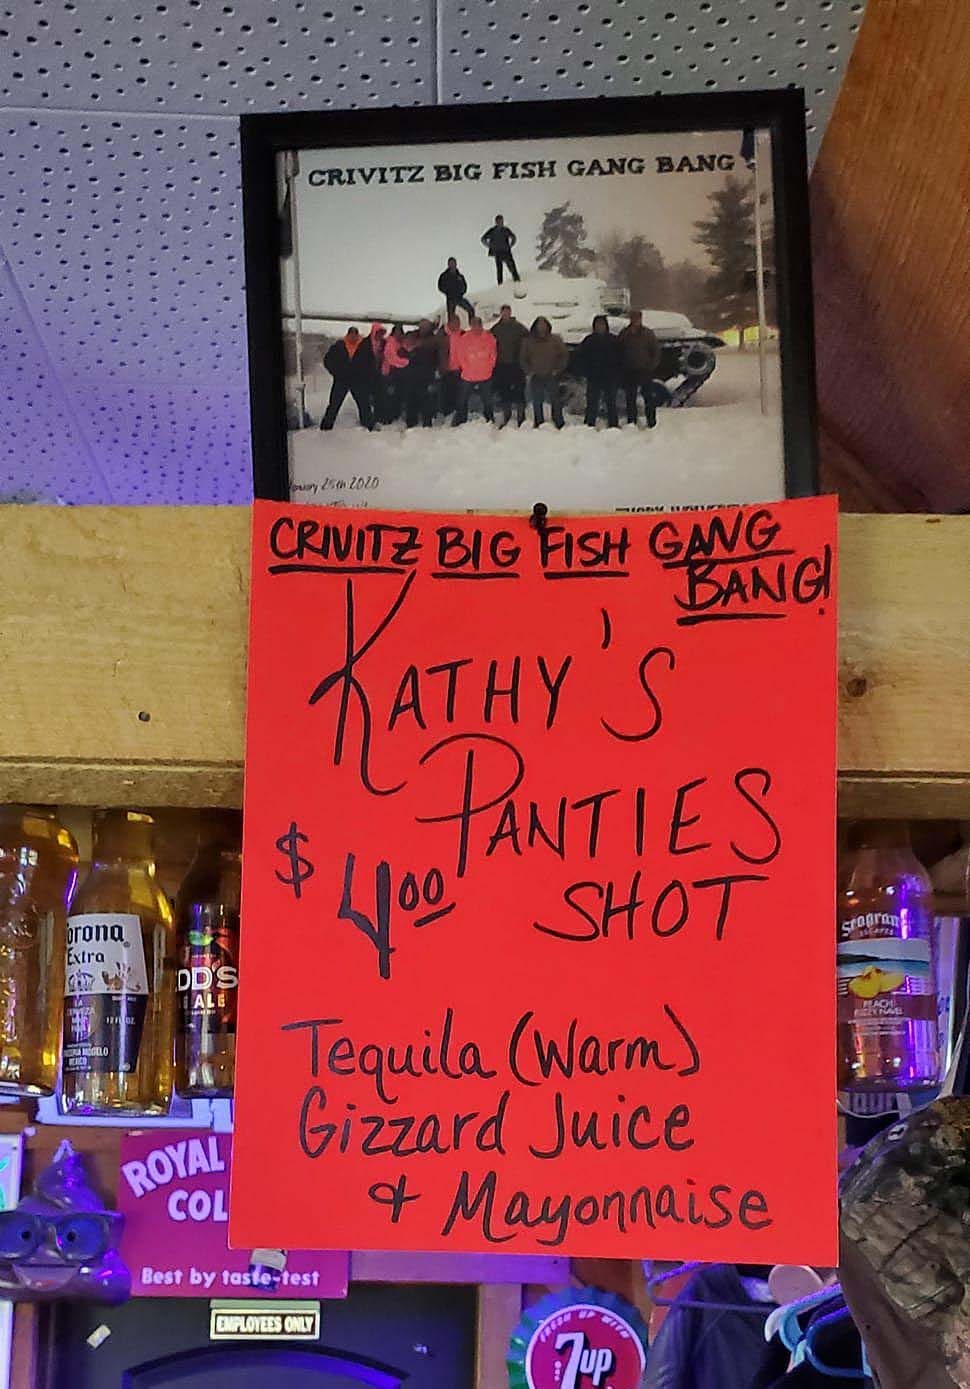 Kathy's Panties shot at a dive bar in Crivitz, WI